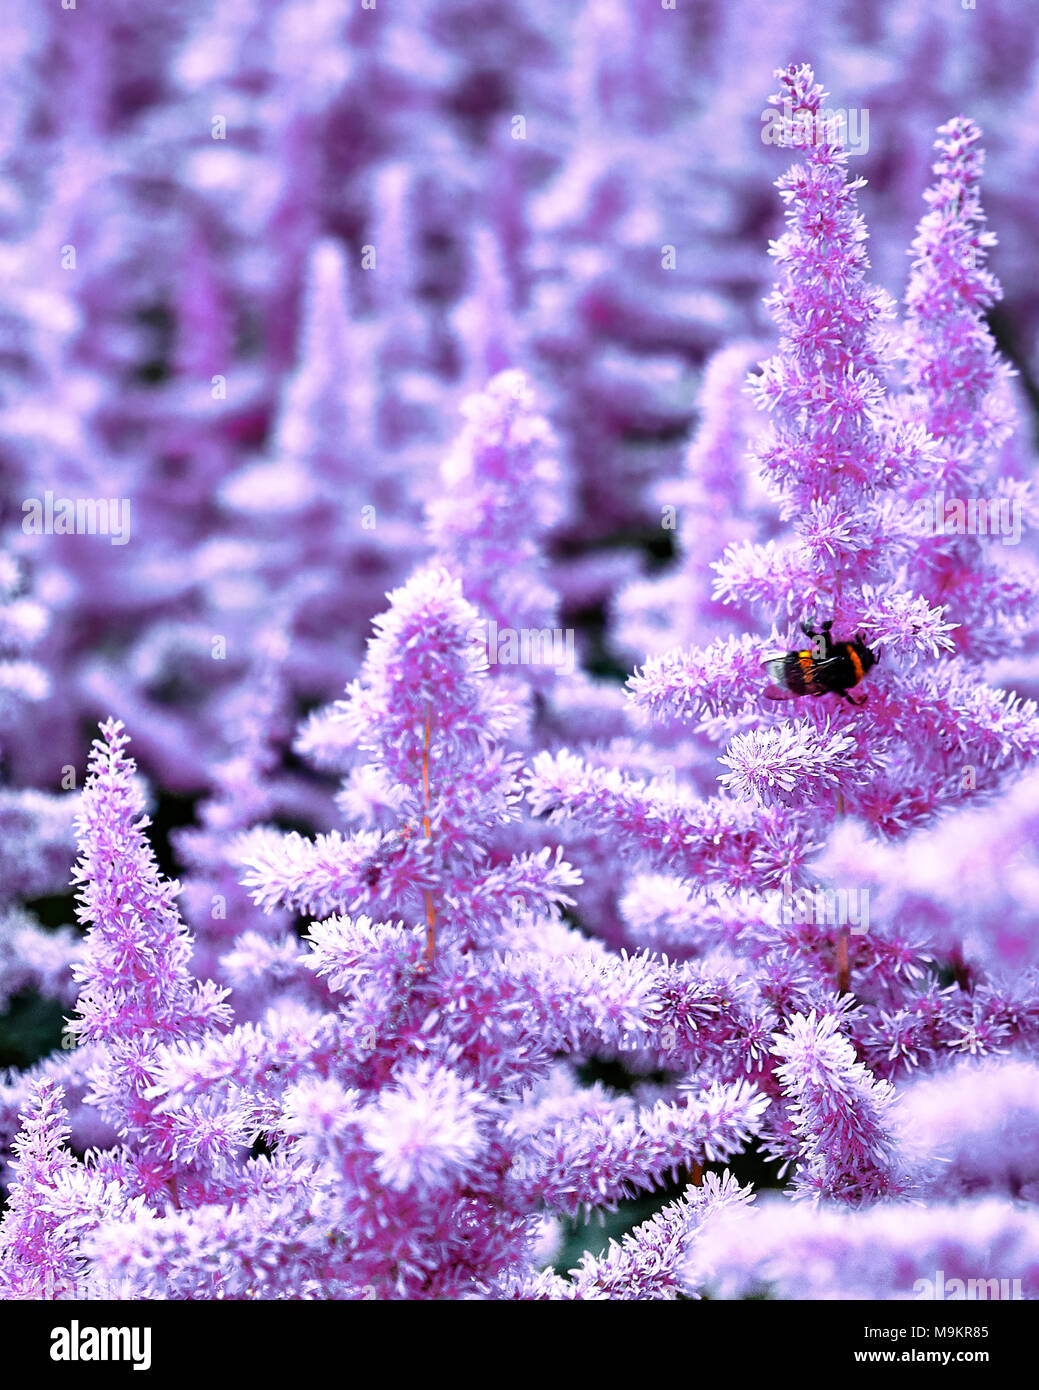 Bella cespugli di fiori Astilbe con un soffice pannocchie rosa e un Bumble Bee sul fiore closeup, nice background Foto Stock